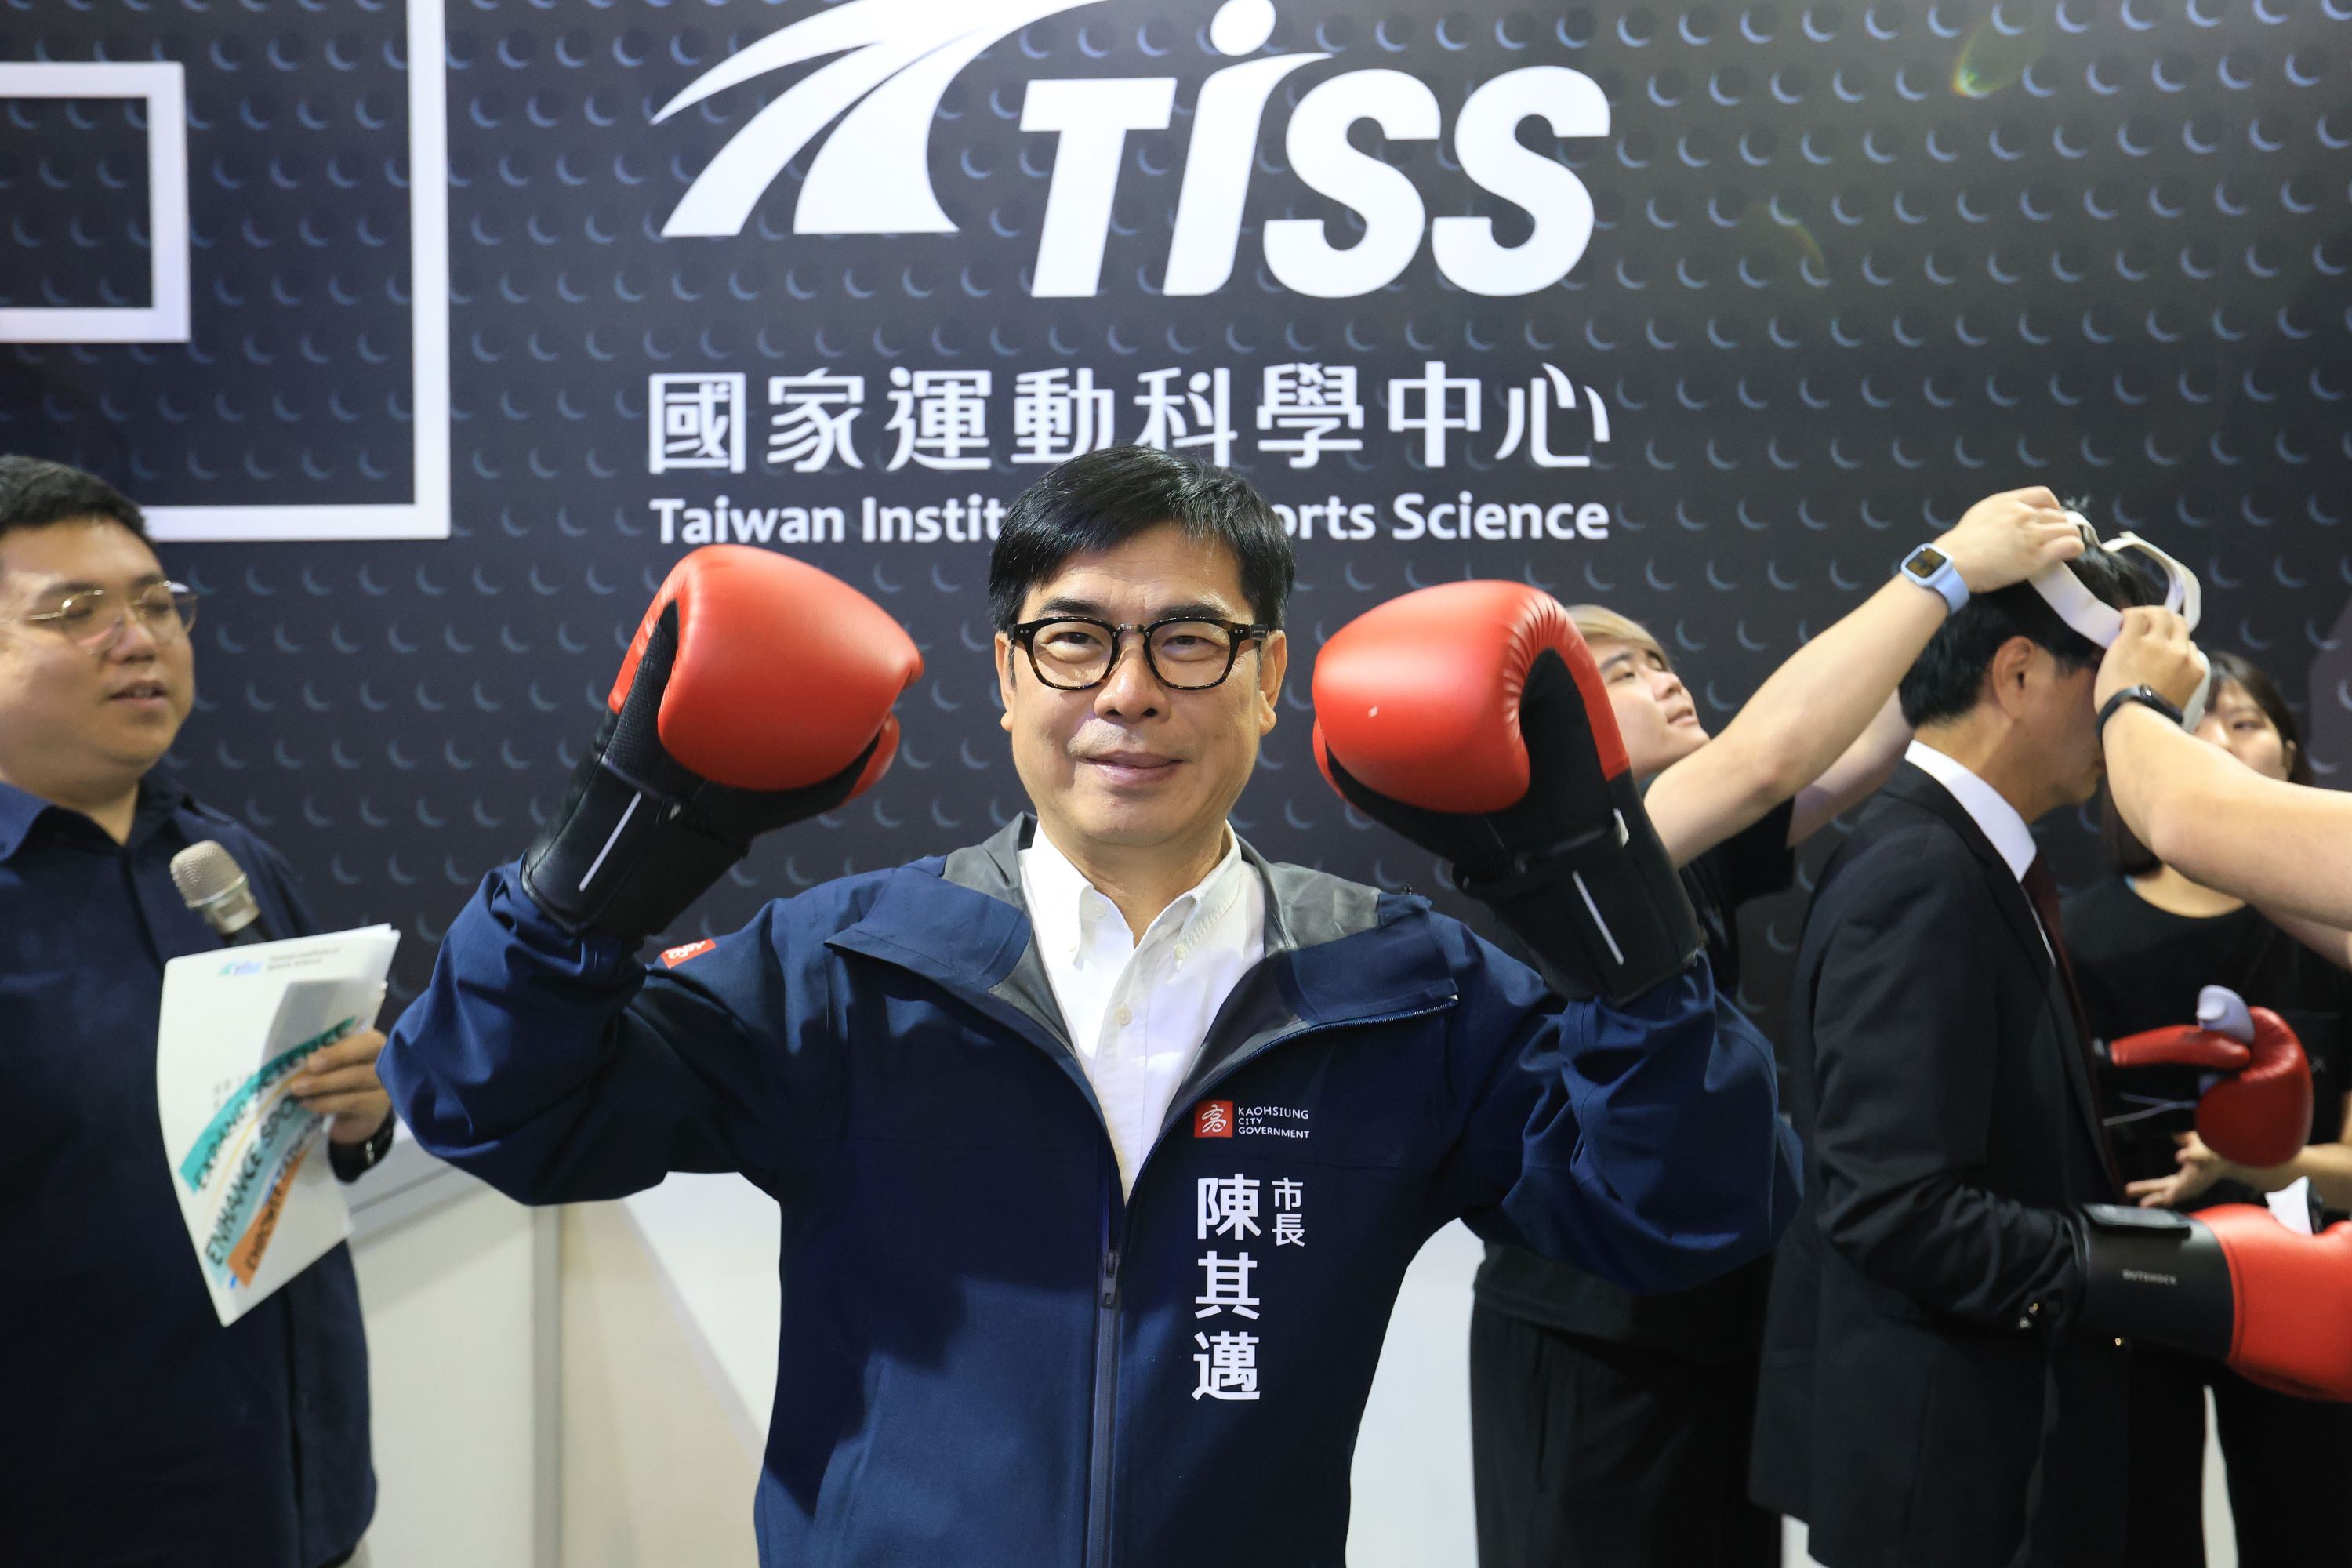 高雄市長陳其邁帶起拳擊手套體驗國家運動科學中心研發的移動式拳擊訓練系統「易動拳靶」，目前已運用在國家訓練上。（圖片提供：高雄市政府）